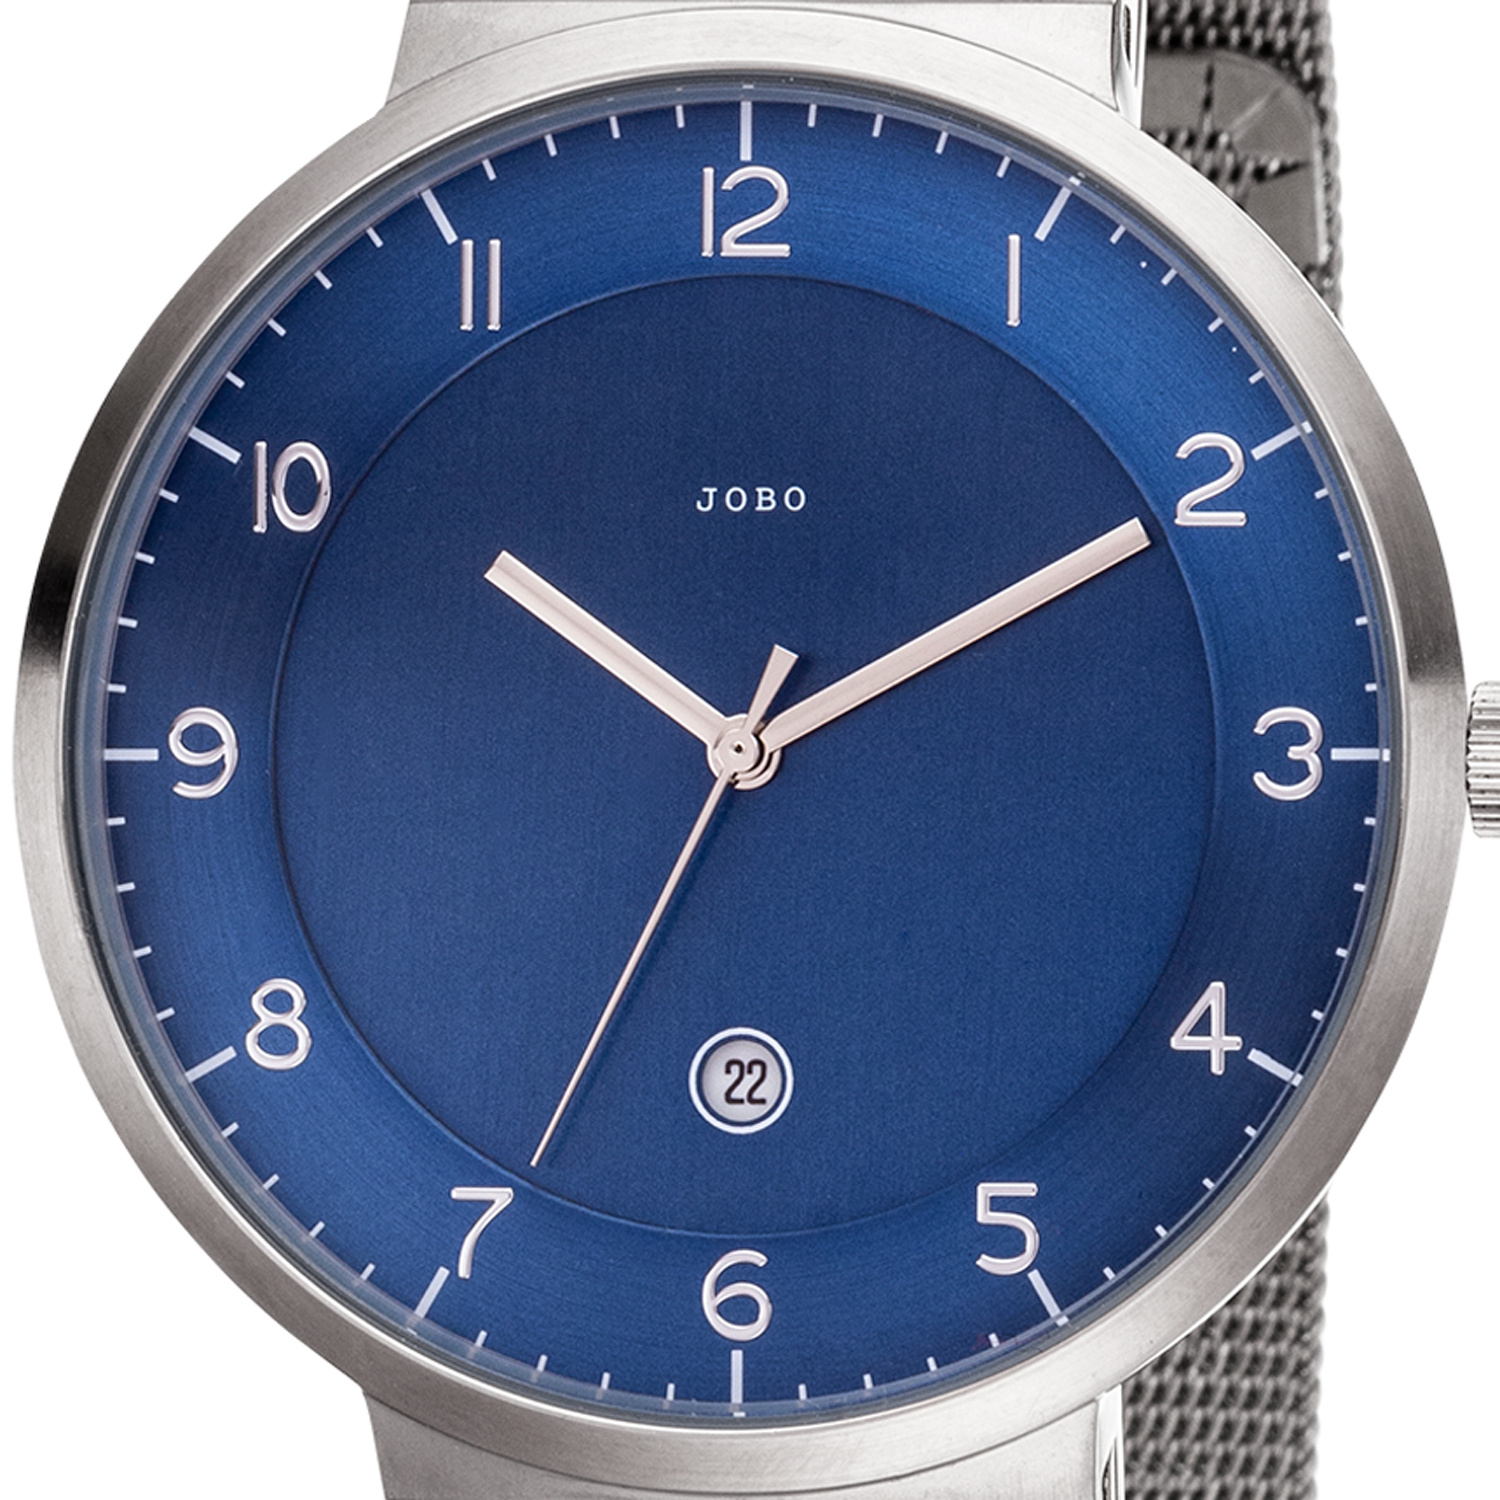 JOBO Herren Edelstahl Datum Armbanduhr Analog Quarz Herrenuhr blau